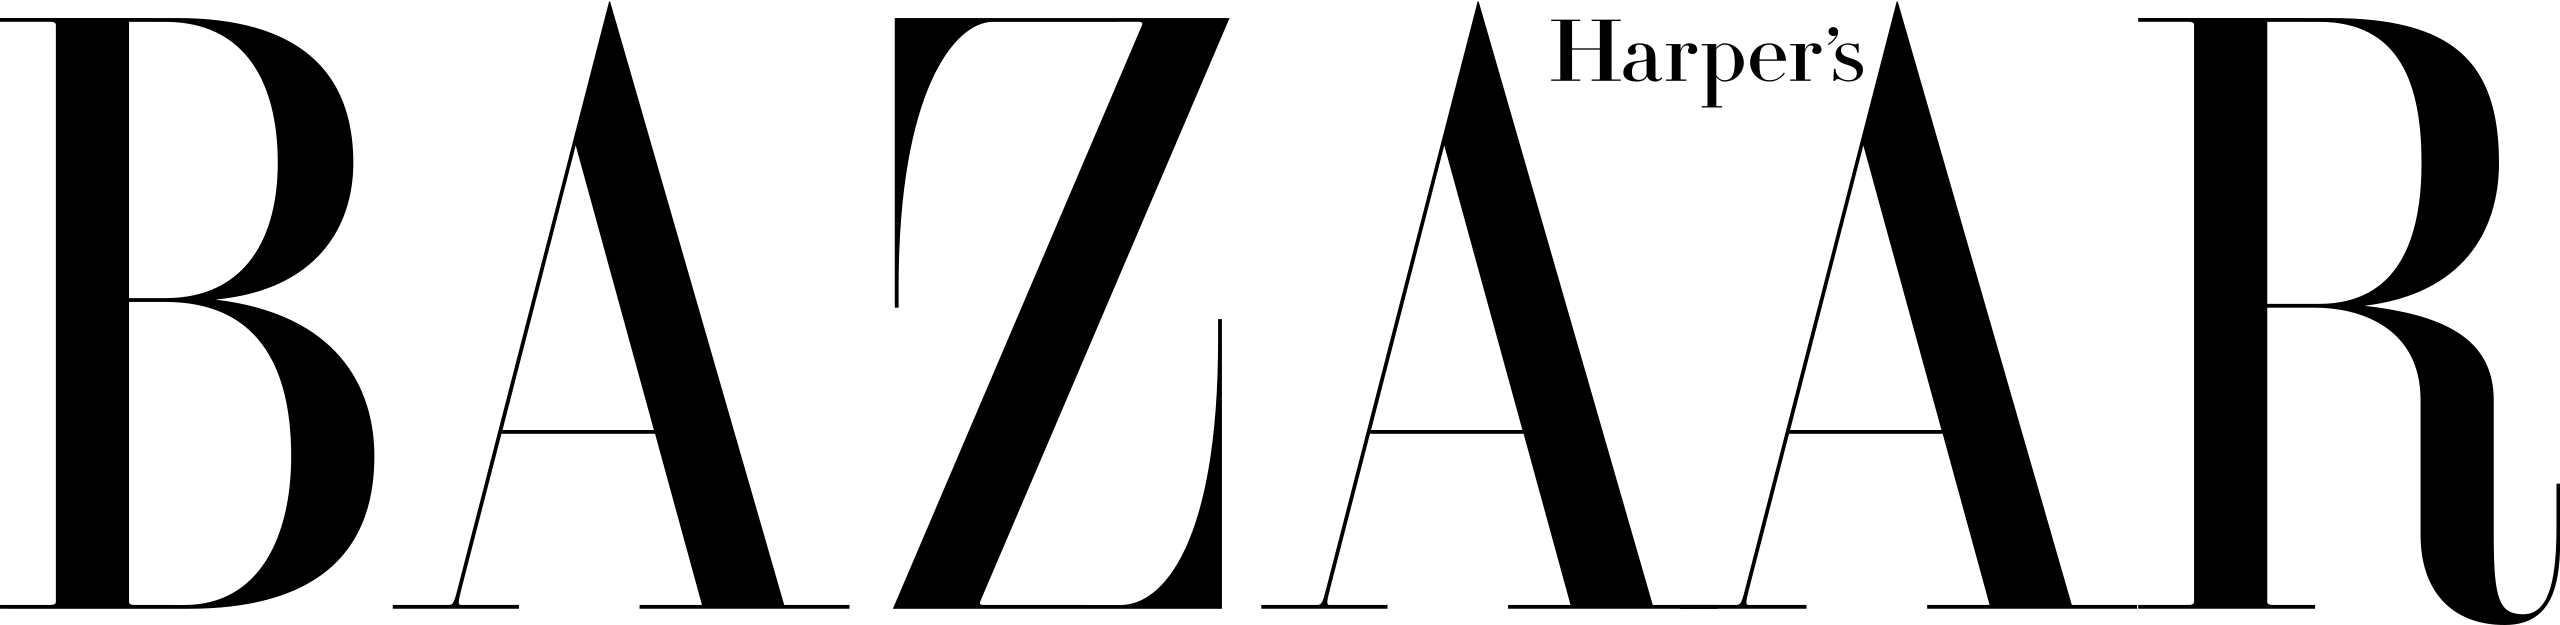 Harper Bazaar logo